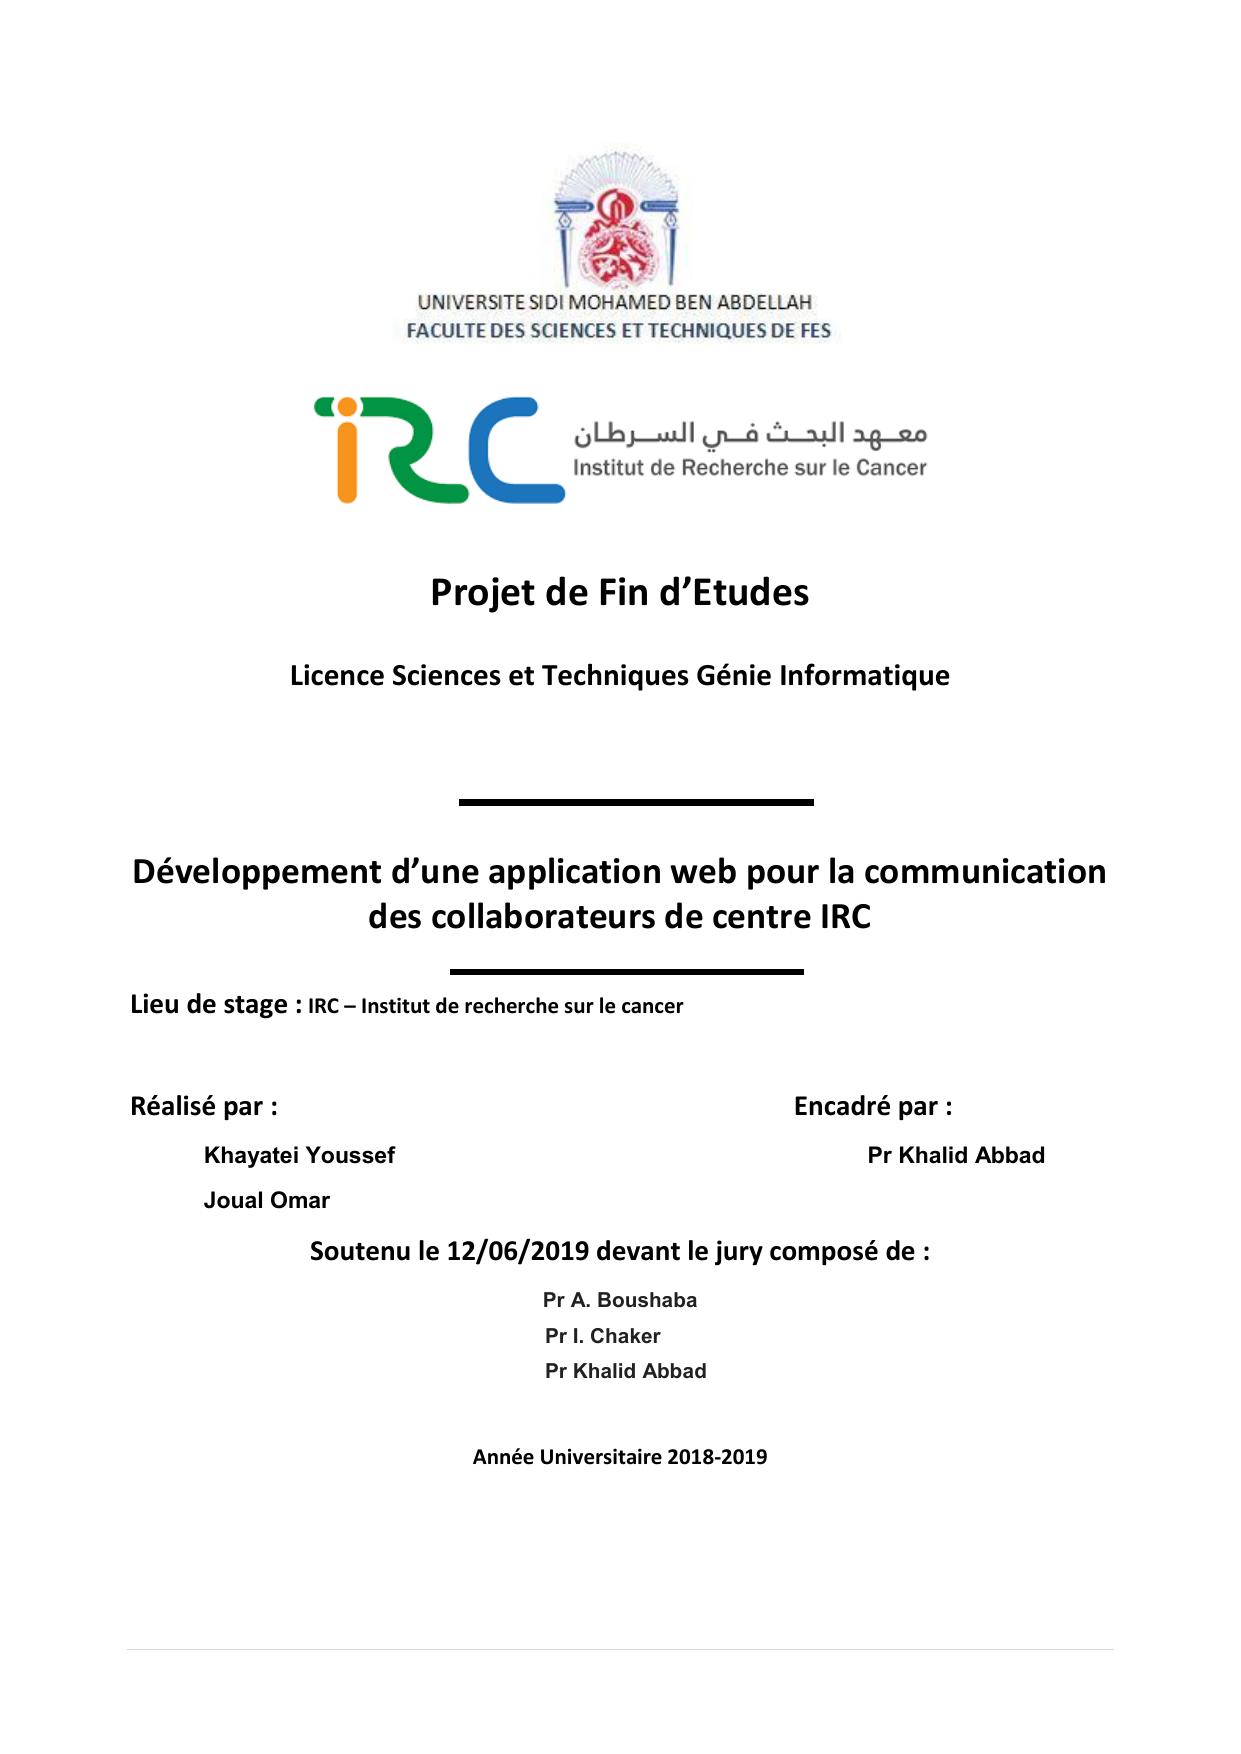 Développement d’une application web pour la communication des collaborateurs de centre IRC